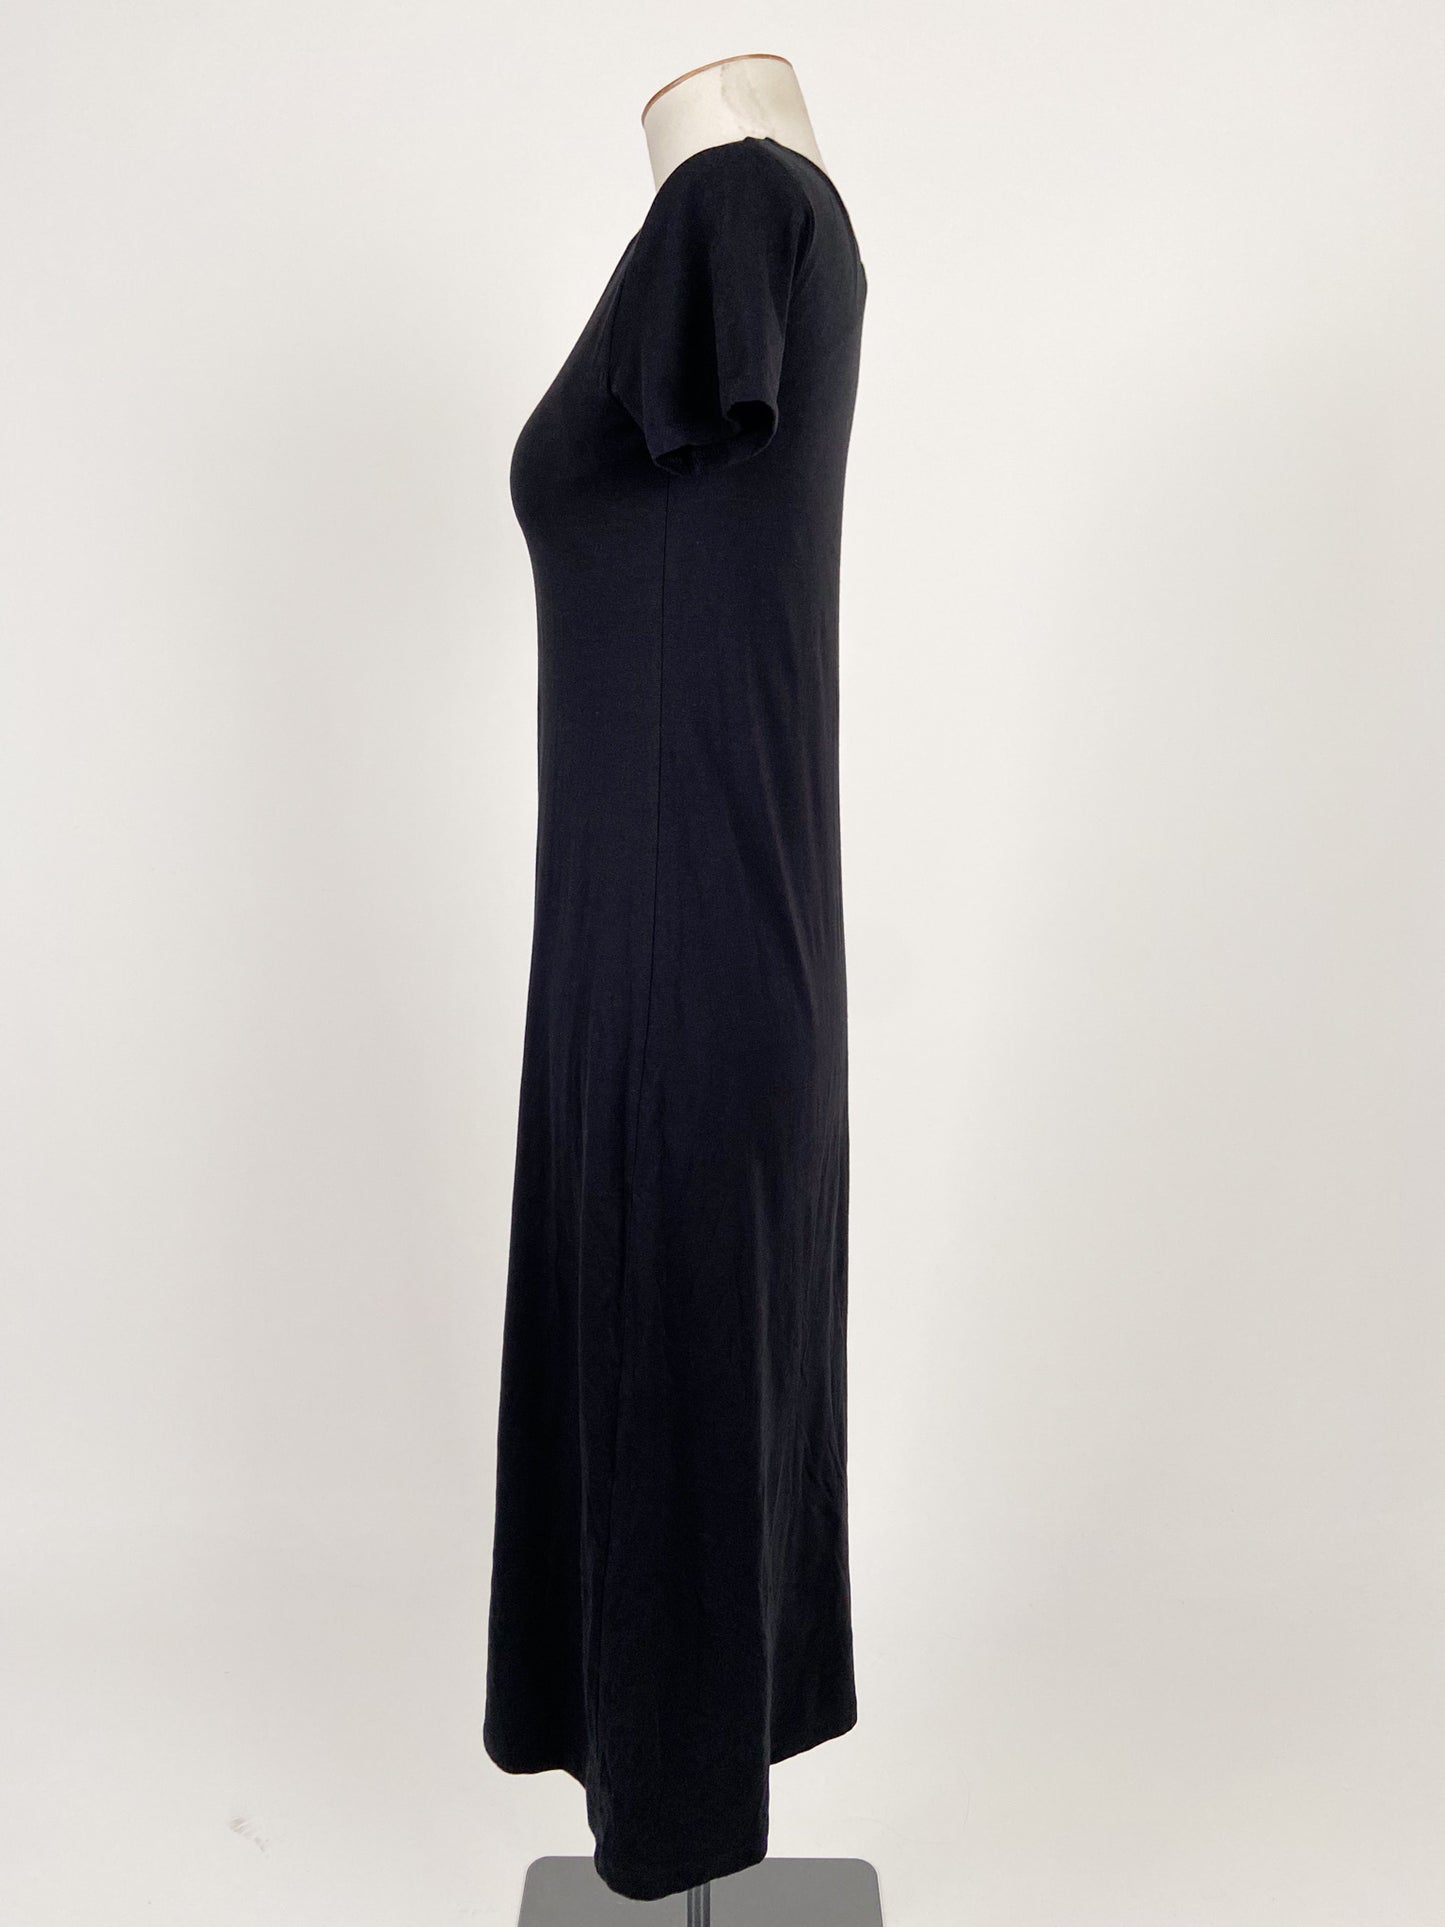 Uniqlo | Black Casual Dress | Size S